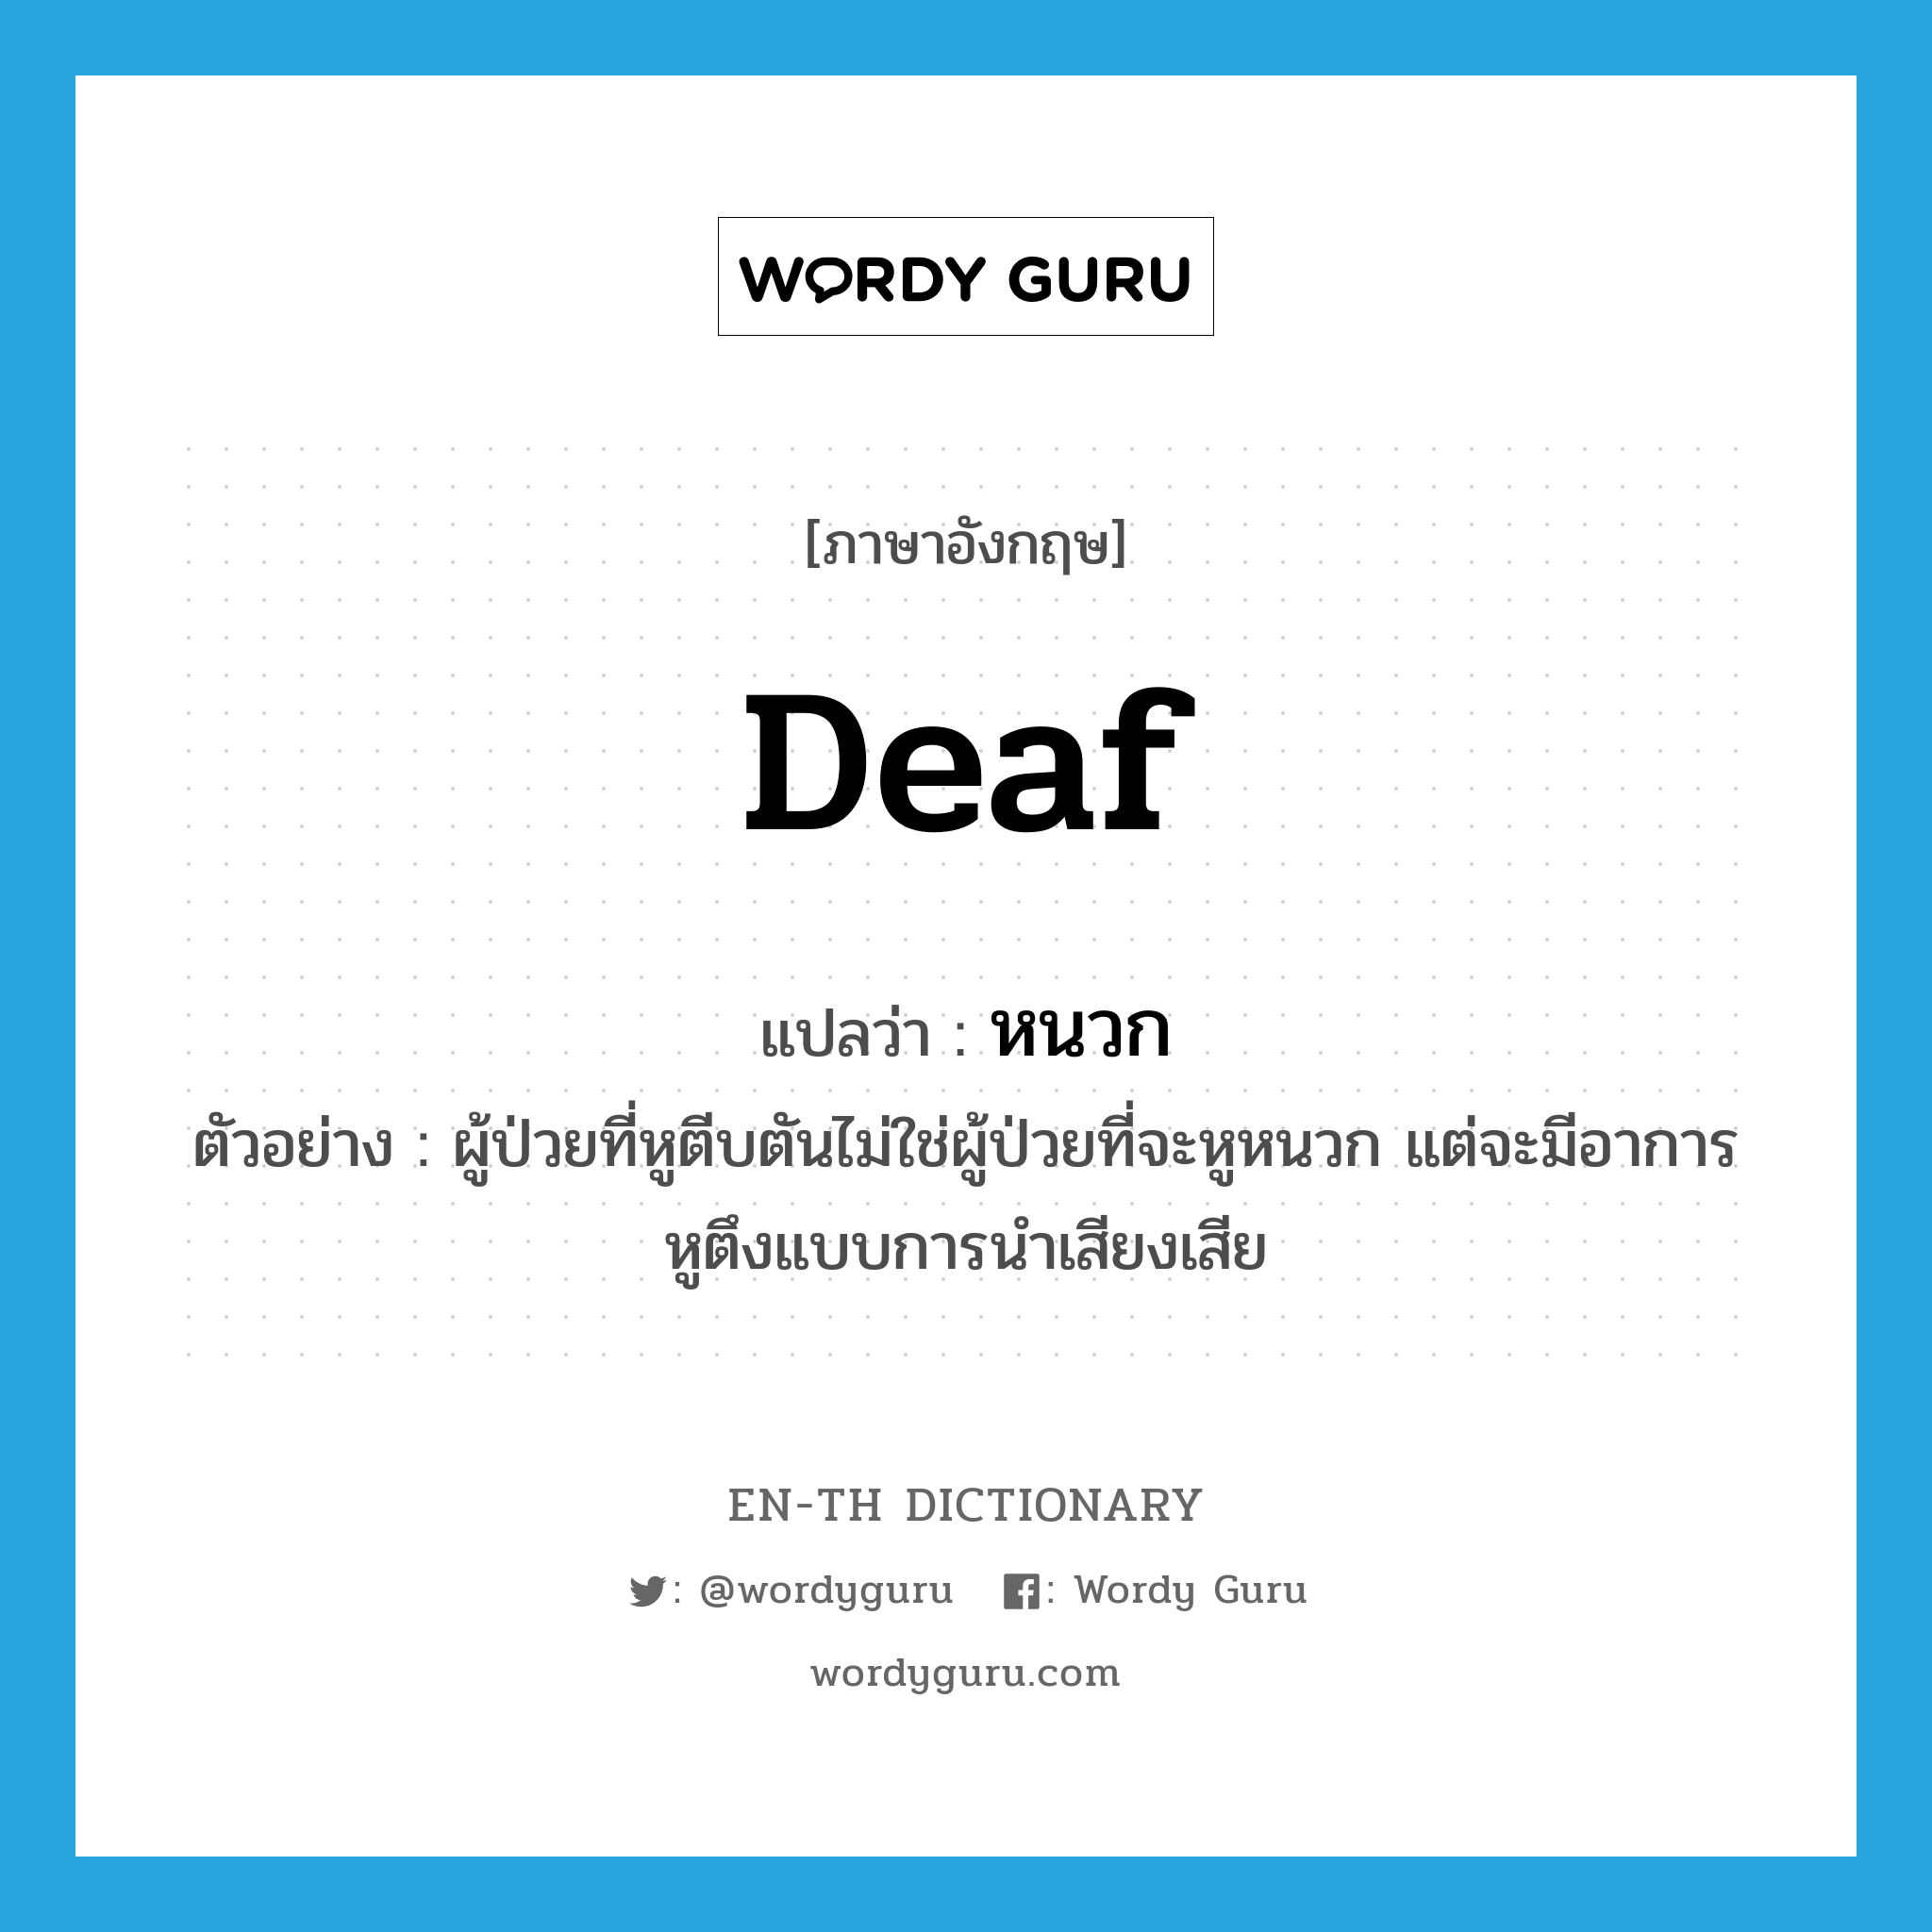 หนวก ภาษาอังกฤษ?, คำศัพท์ภาษาอังกฤษ หนวก แปลว่า deaf ประเภท ADJ ตัวอย่าง ผู้ป่วยที่หูตีบตันไม่ใช่ผู้ป่วยที่จะหูหนวก แต่จะมีอาการหูตึงแบบการนำเสียงเสีย หมวด ADJ